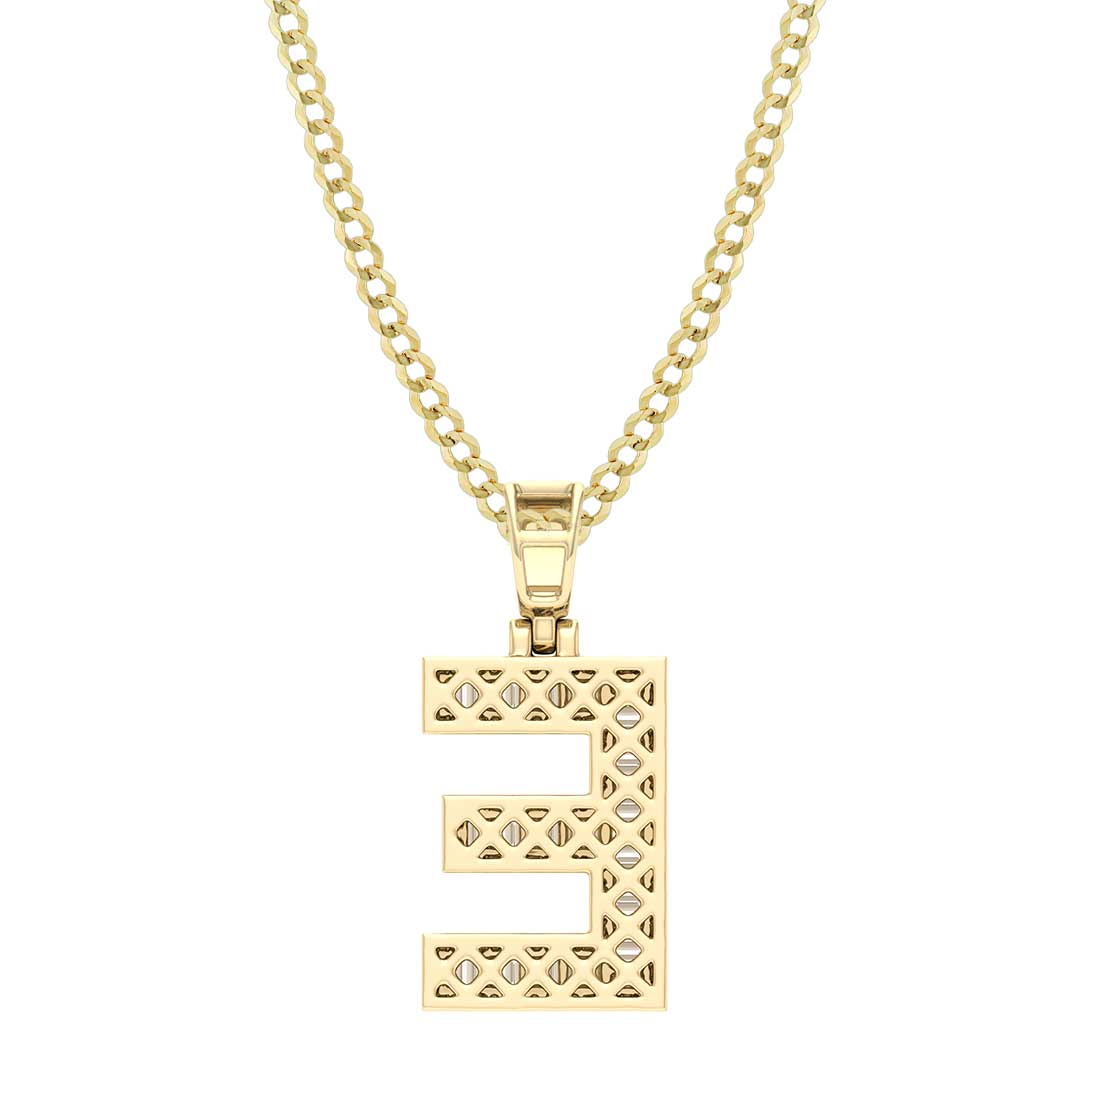 Baguette & Round Cut Diamond "E" Initial Pendant Necklace 0.31ct 14K Gold